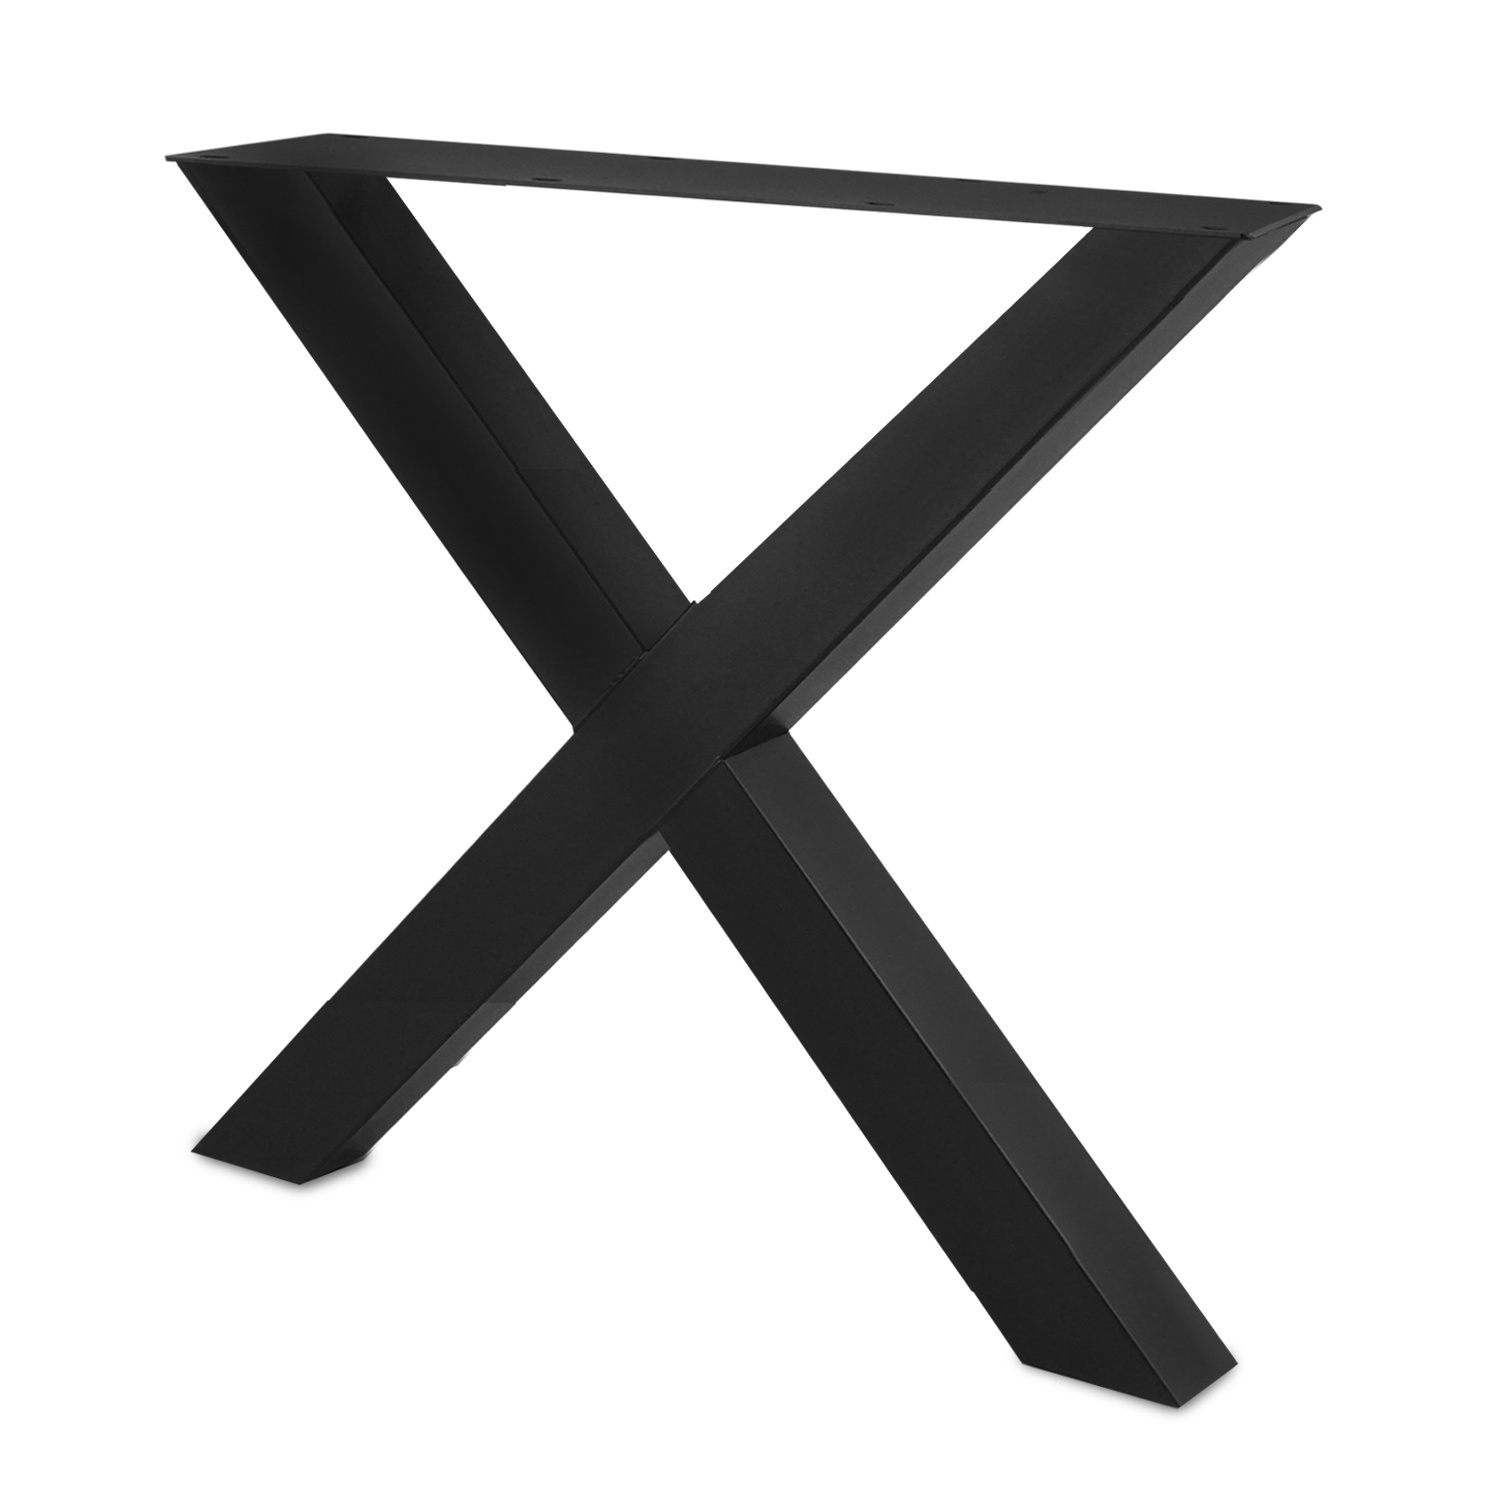  Tischbeine X Metall SET (2 Stück) - 8x8 cm - 78 cm breit - 72 cm hoch - X-form Tischkufen / Tischgestell beschichtet - Schwarz